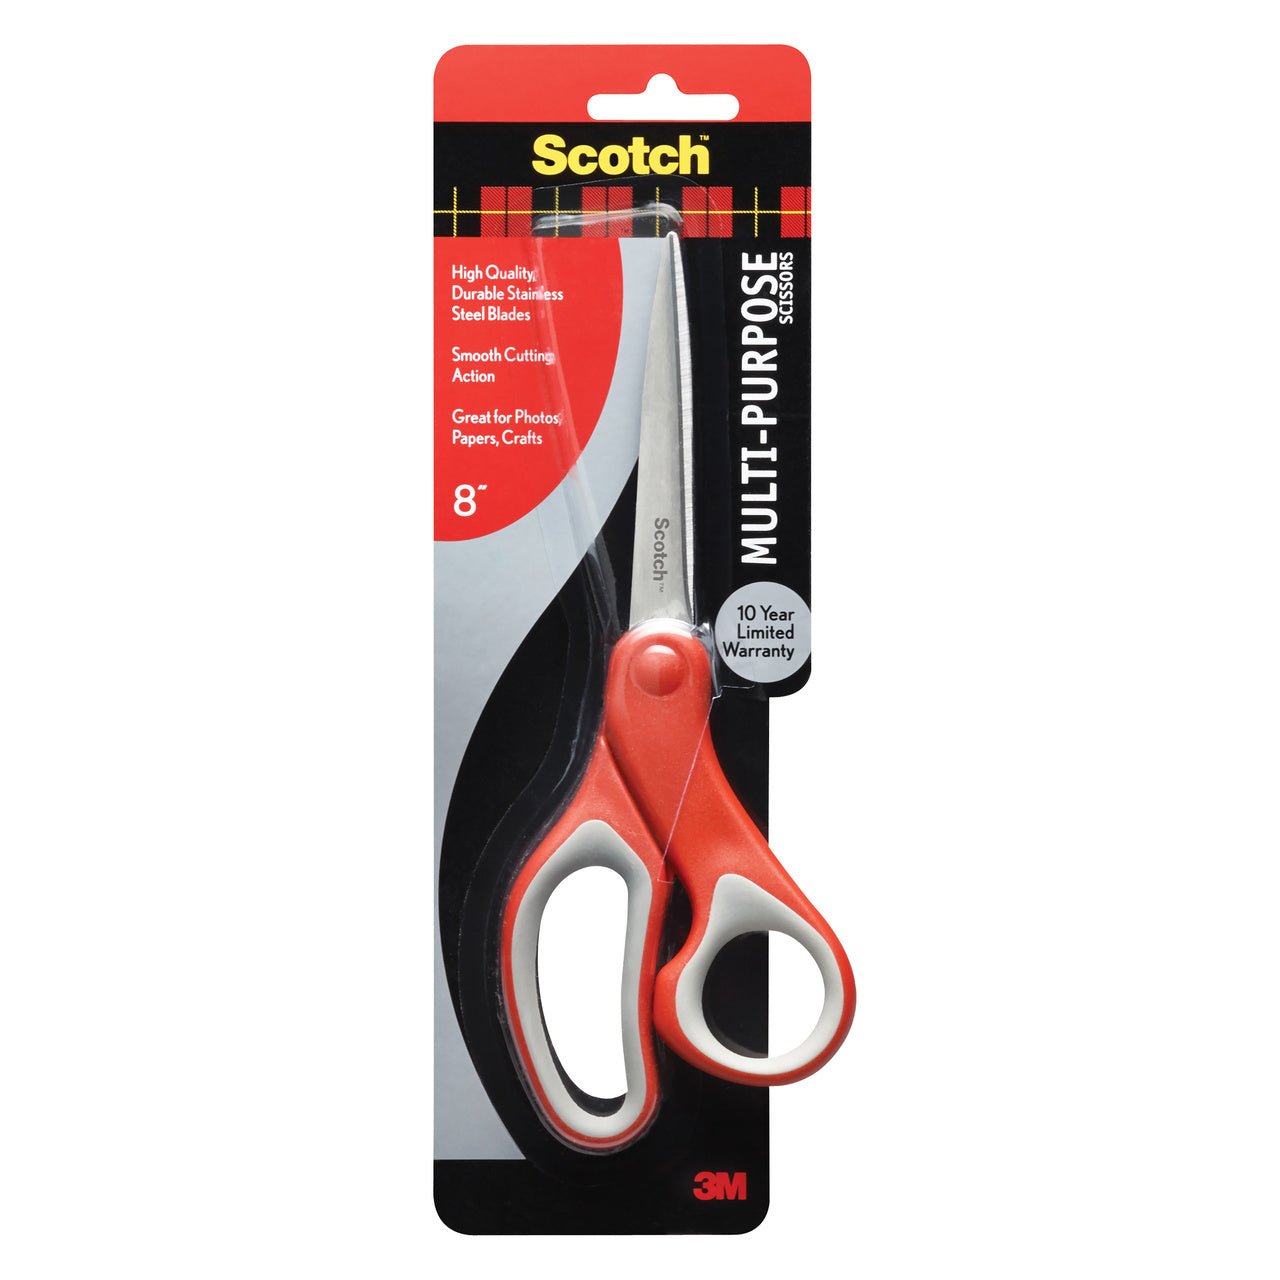 http://merriartist.com/cdn/shop/products/3m-scotch-multi-purpose-scissors-8-inch-318292.jpg?v=1671480600